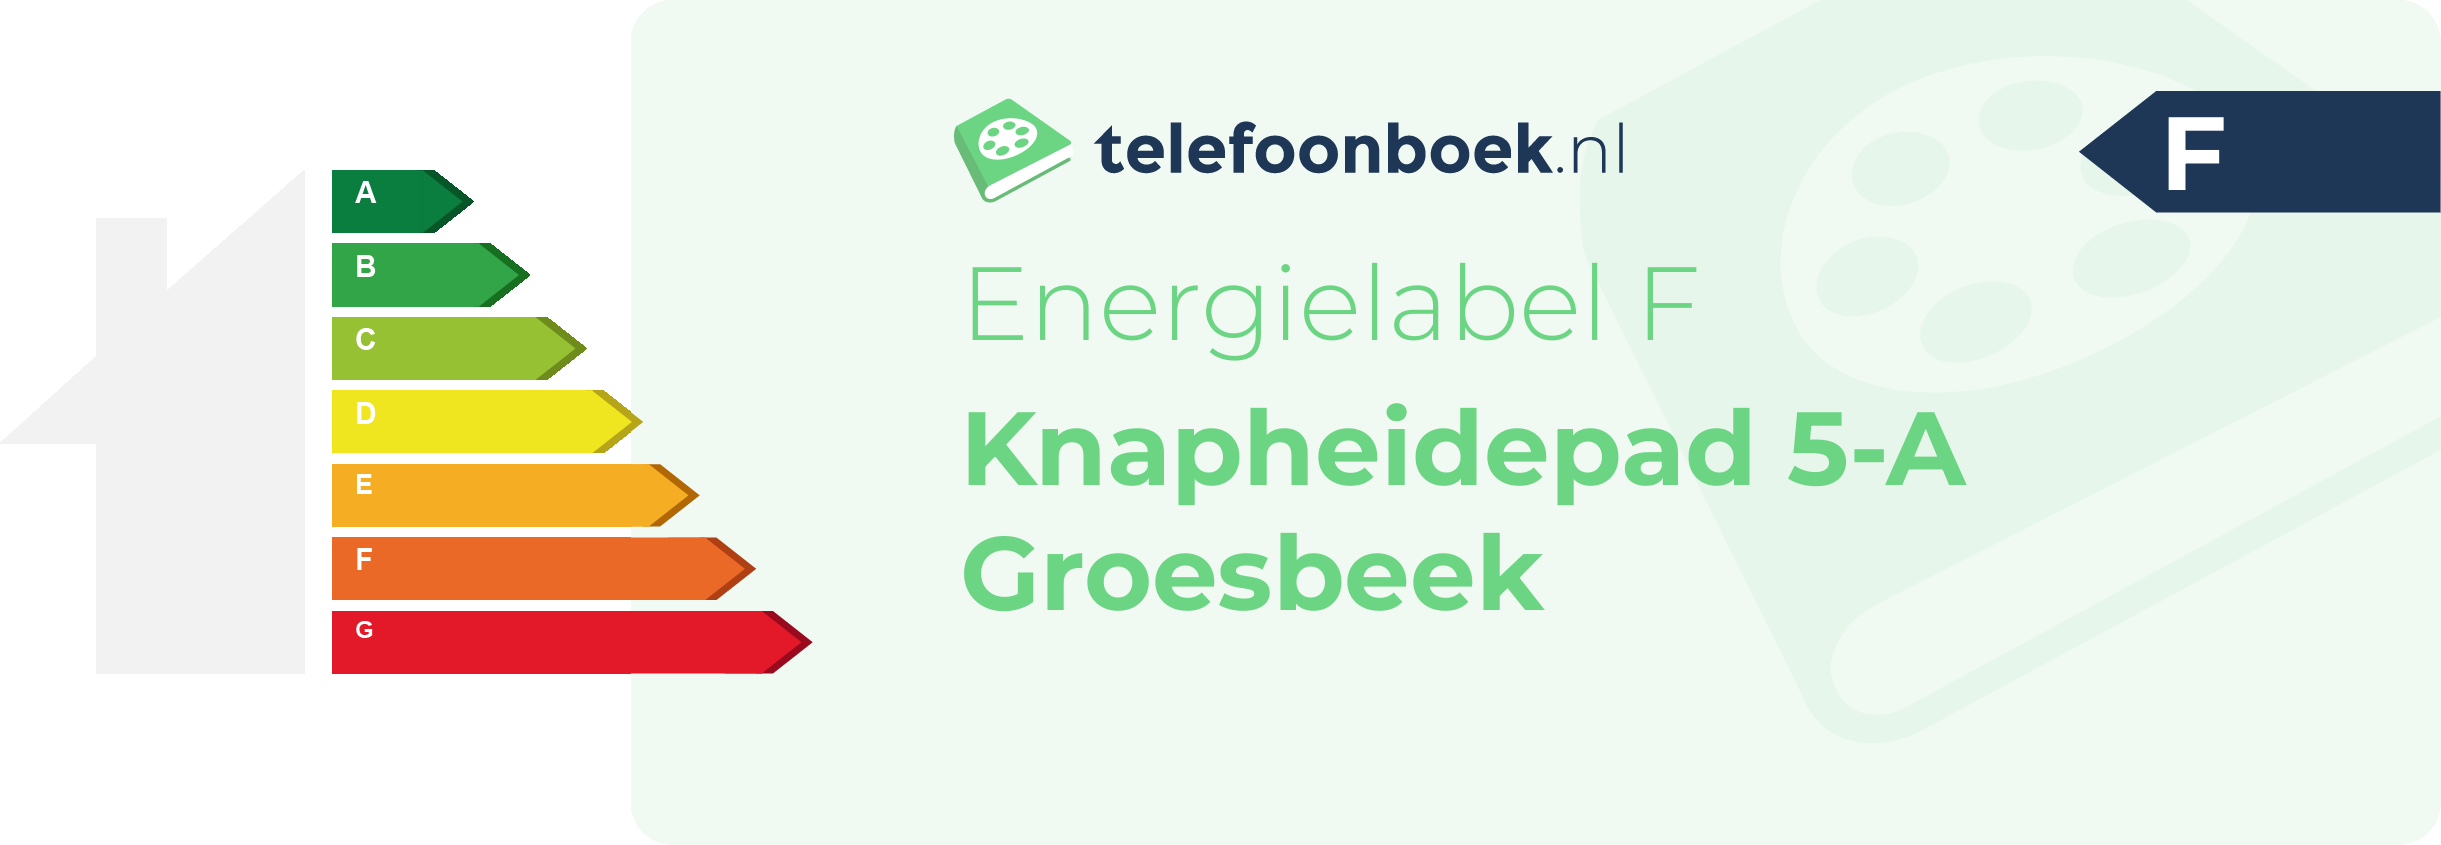 Energielabel Knapheidepad 5-A Groesbeek